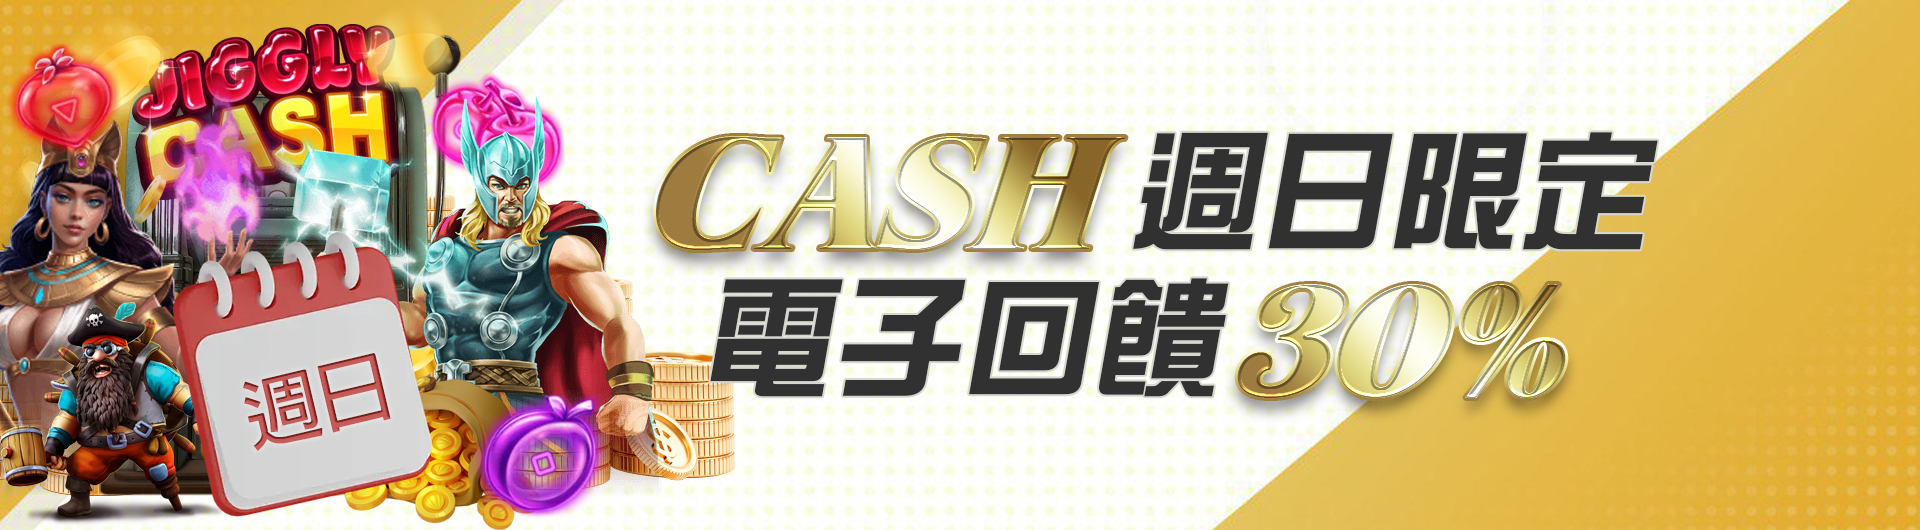 CASH周日限定電子回饋30%